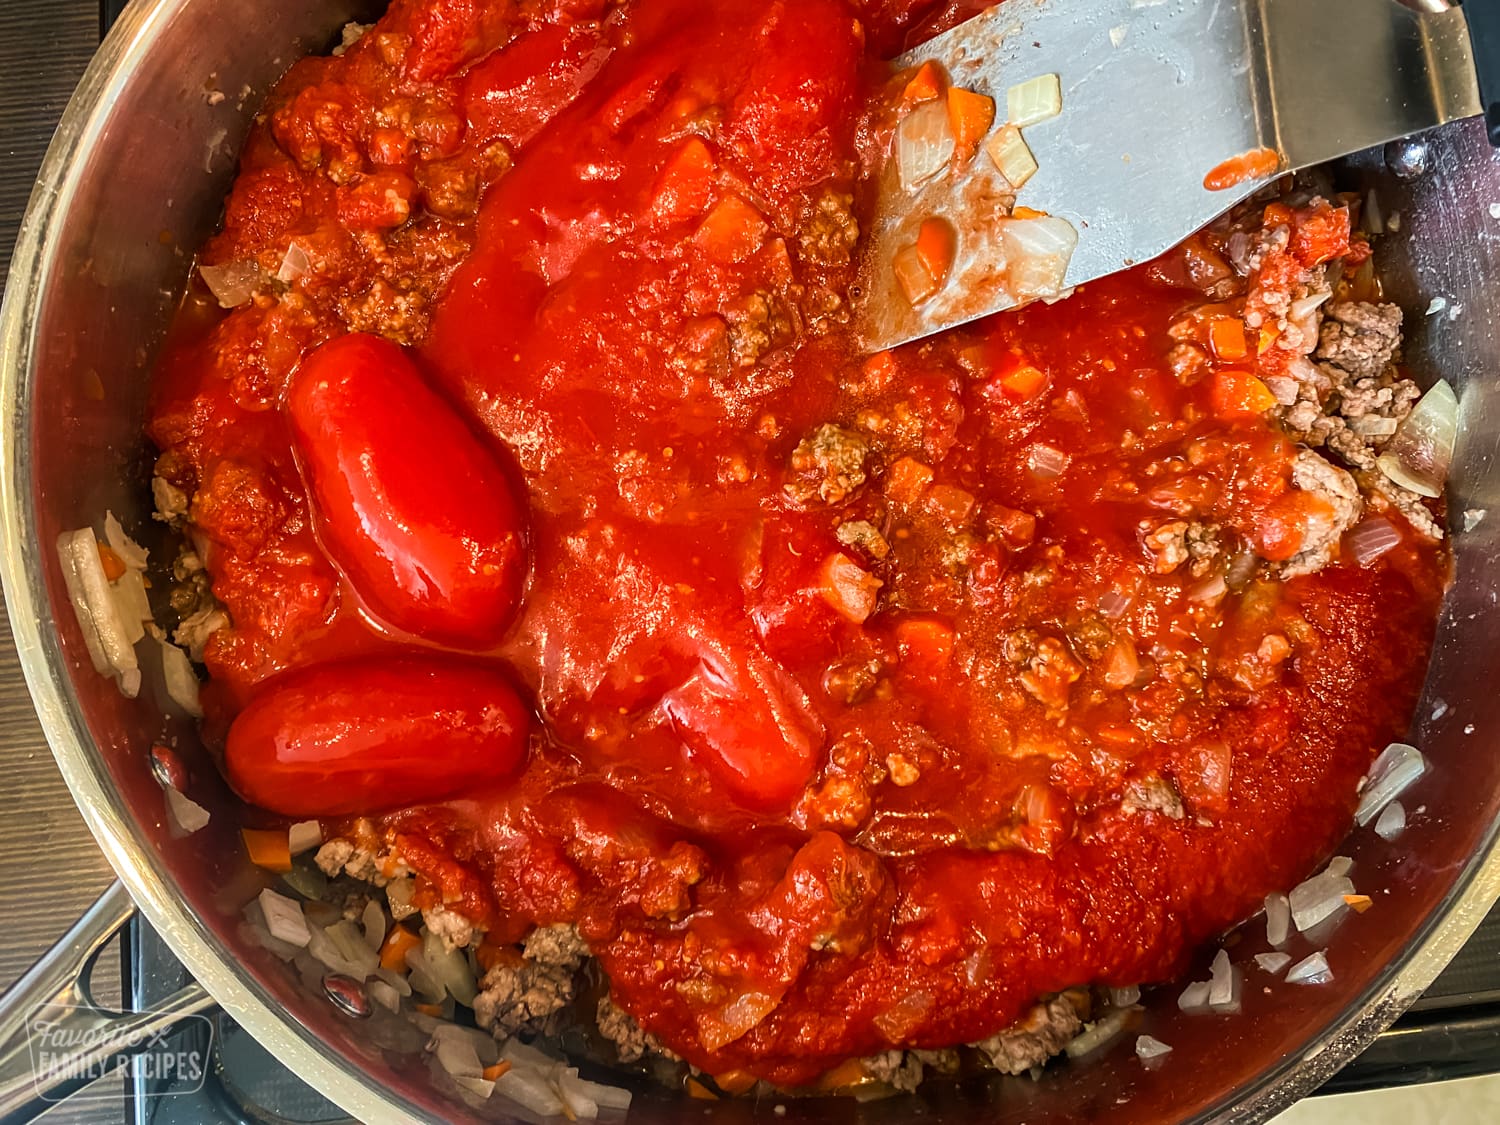 San marzano tomatoes in spaghetti sauce